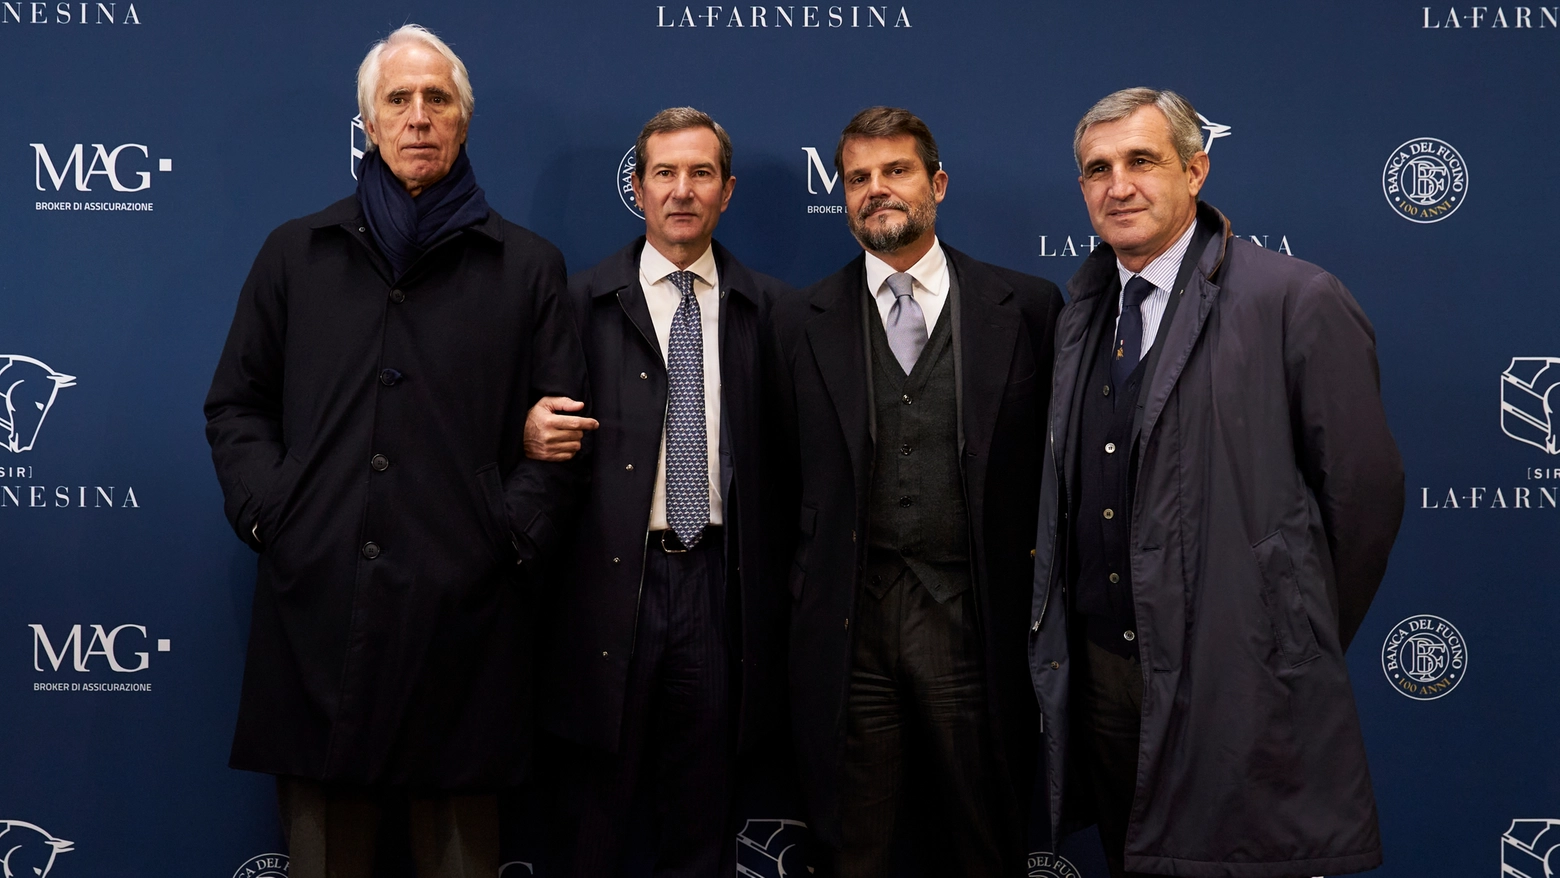 Da sinistra Giovanni Malagò, Pierluca Impronta, Marco Mezzaroma, Marco Di Paola